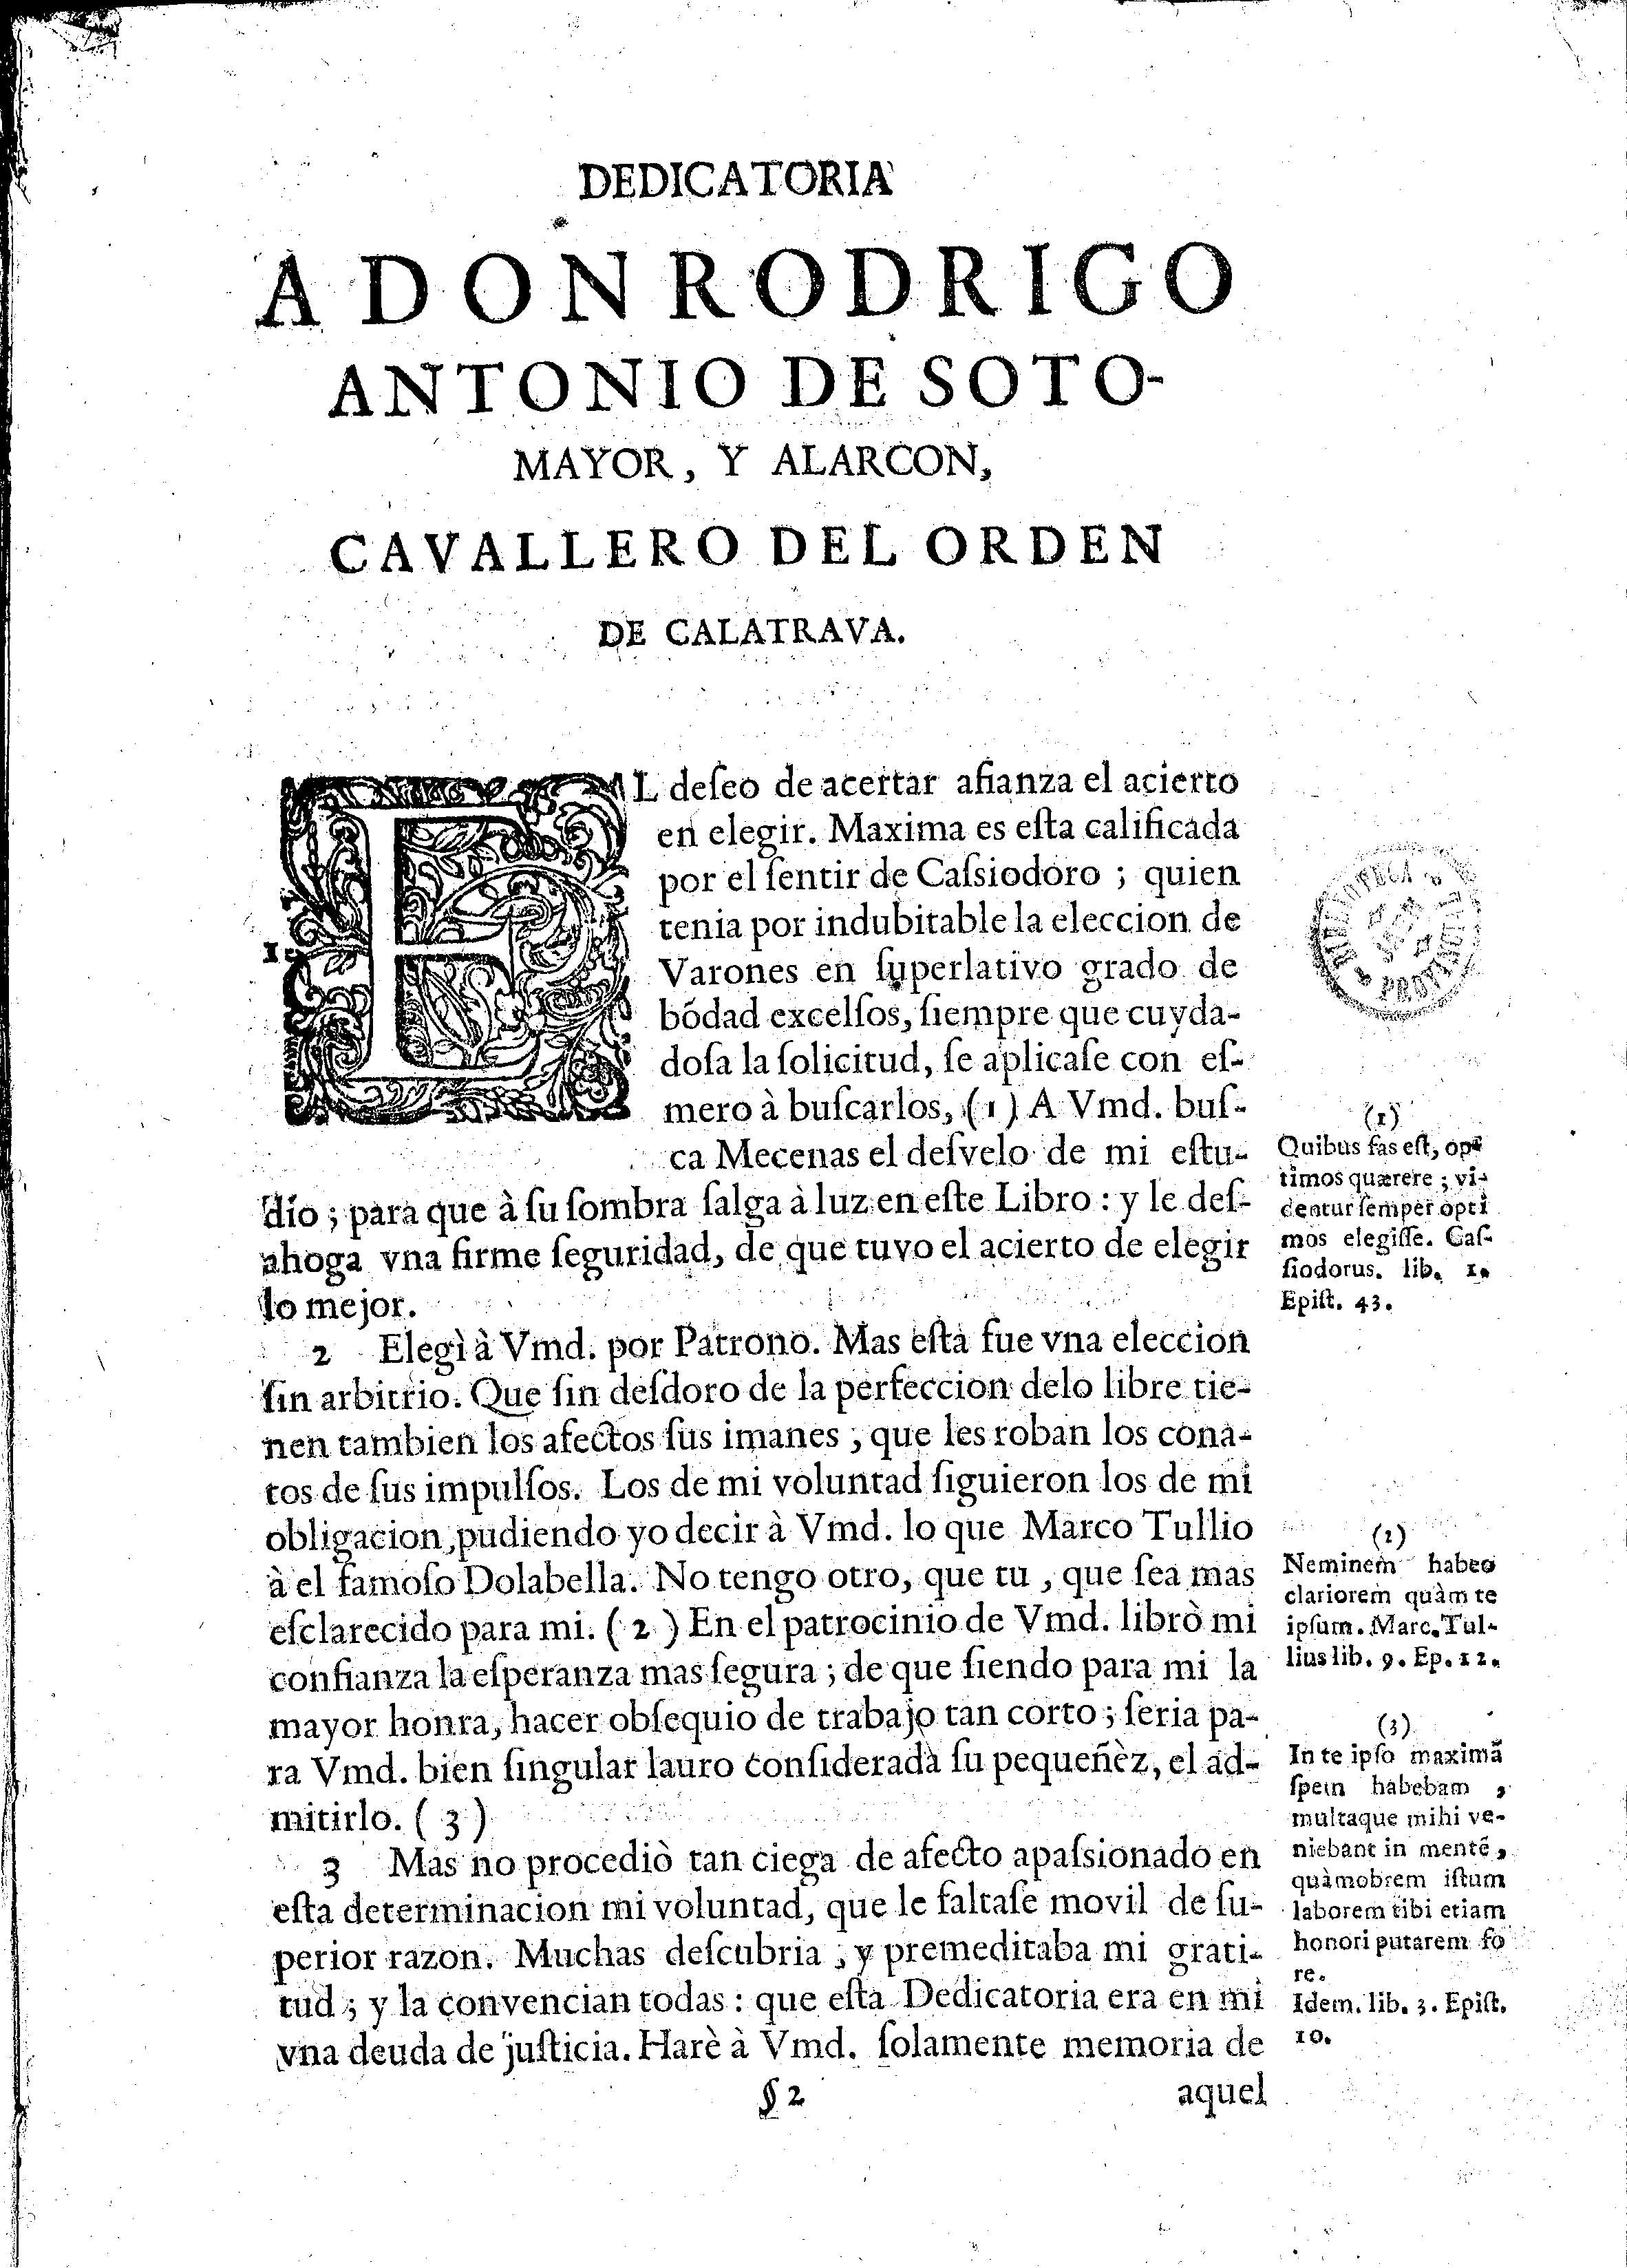 Dedicatoria a don Rodrigo Antonio de Sotomayor y Alarcon, Cavallero del Orden de Calatrava